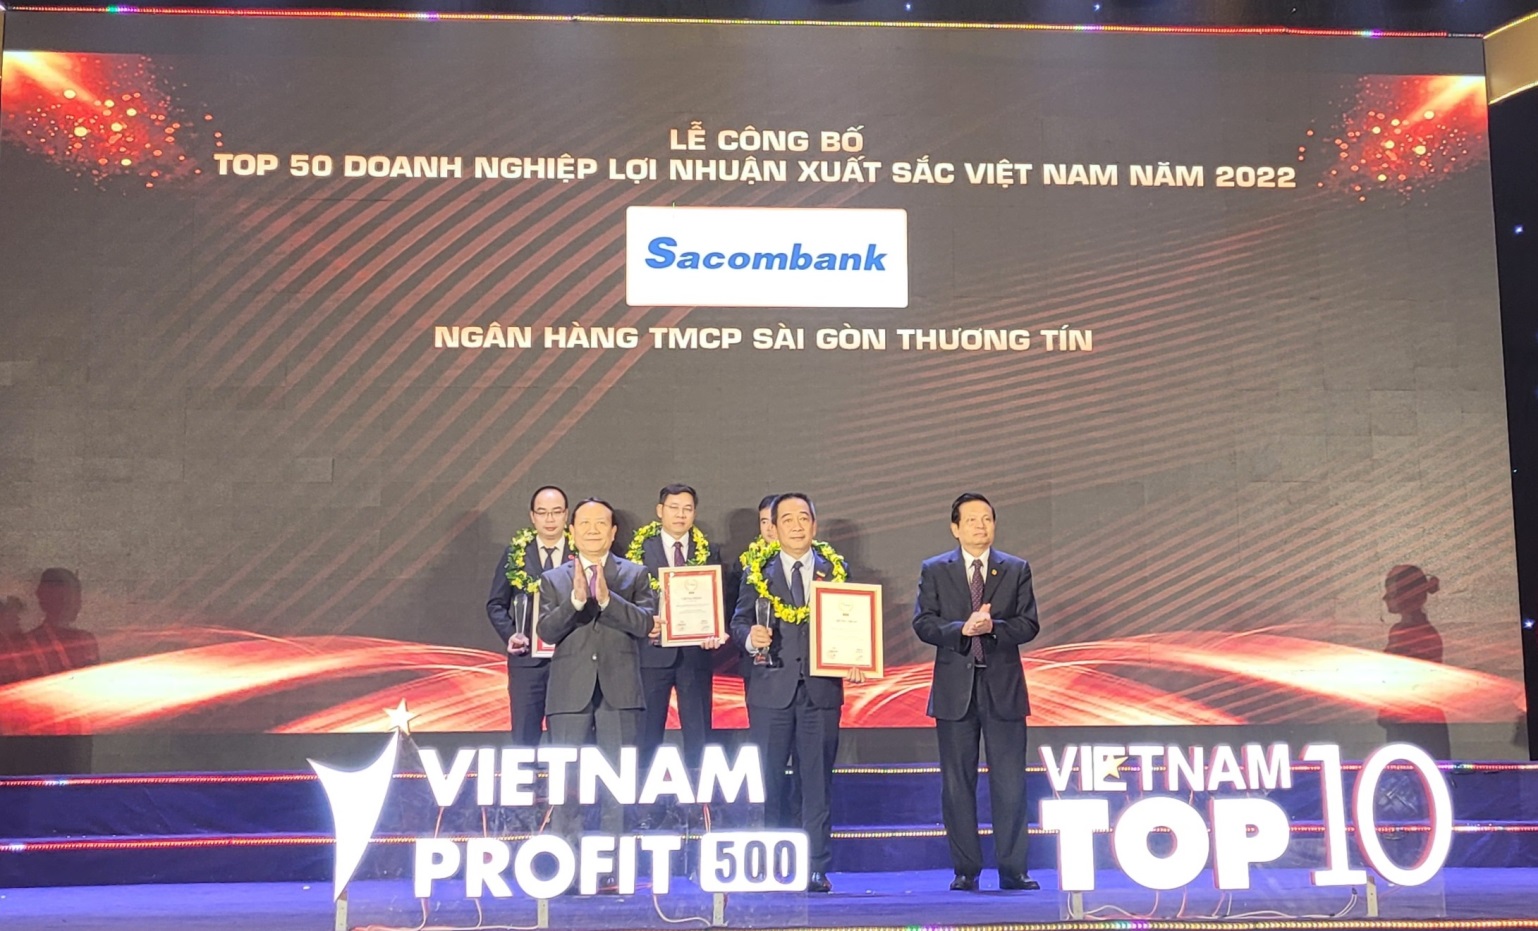 SACOMBANK thuộc Top 50 doanh nghiệp lợi nhuận xuất sắc Việt Nam 2022 - Ảnh 1.